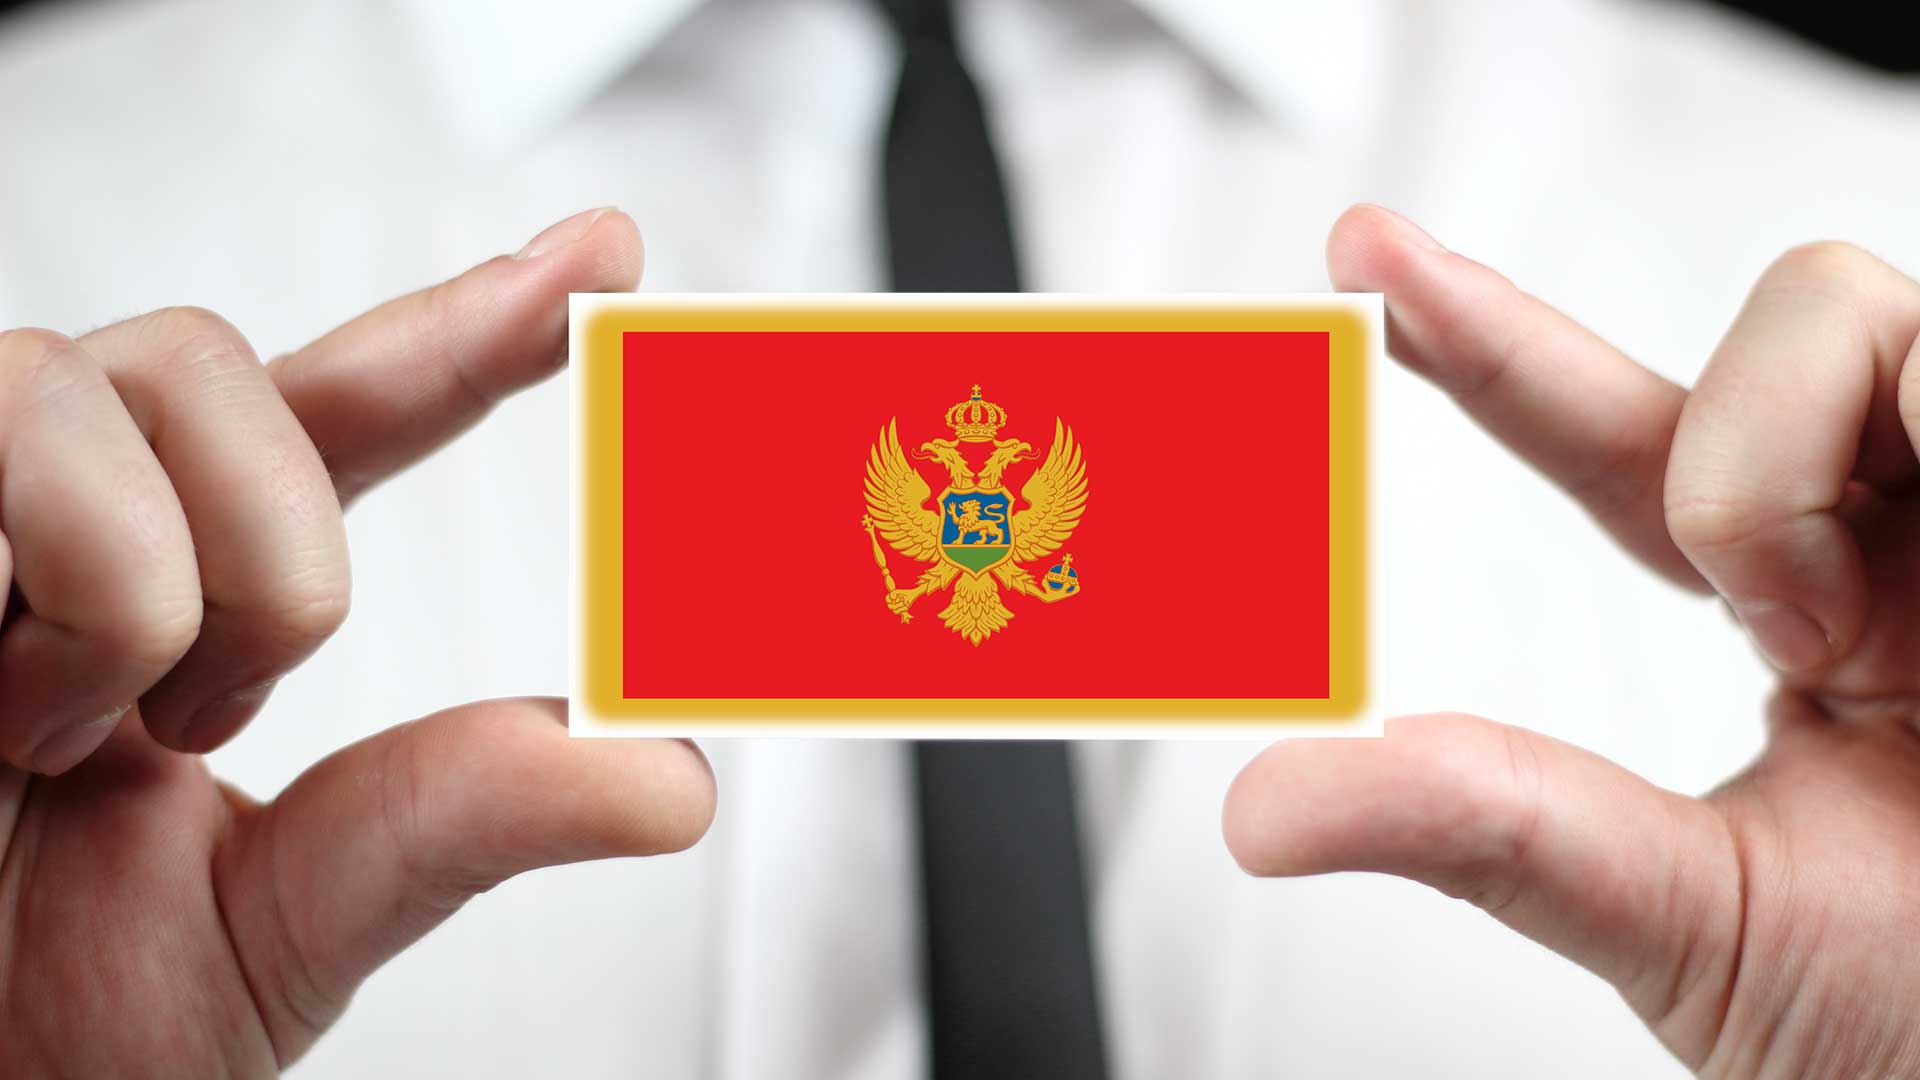 Бизнес-иммигрант держит флаг Черногории, получить ВНЖ которой можно через открытие фирмы